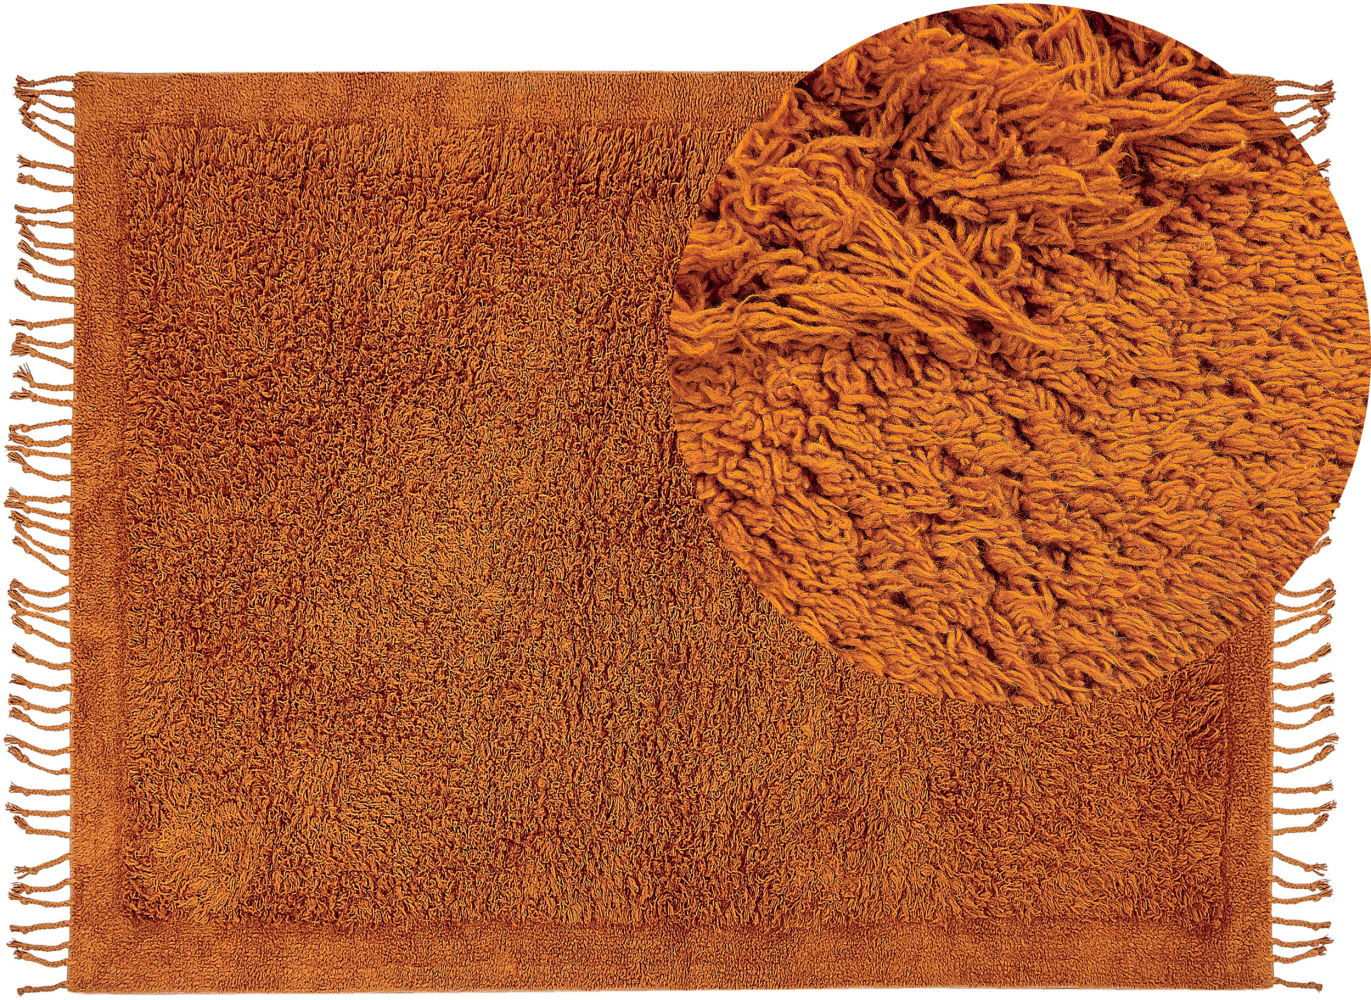 Teppich Baumwolle orange 140 x 200 cm Fransen Shaggy BITLIS Bild 1